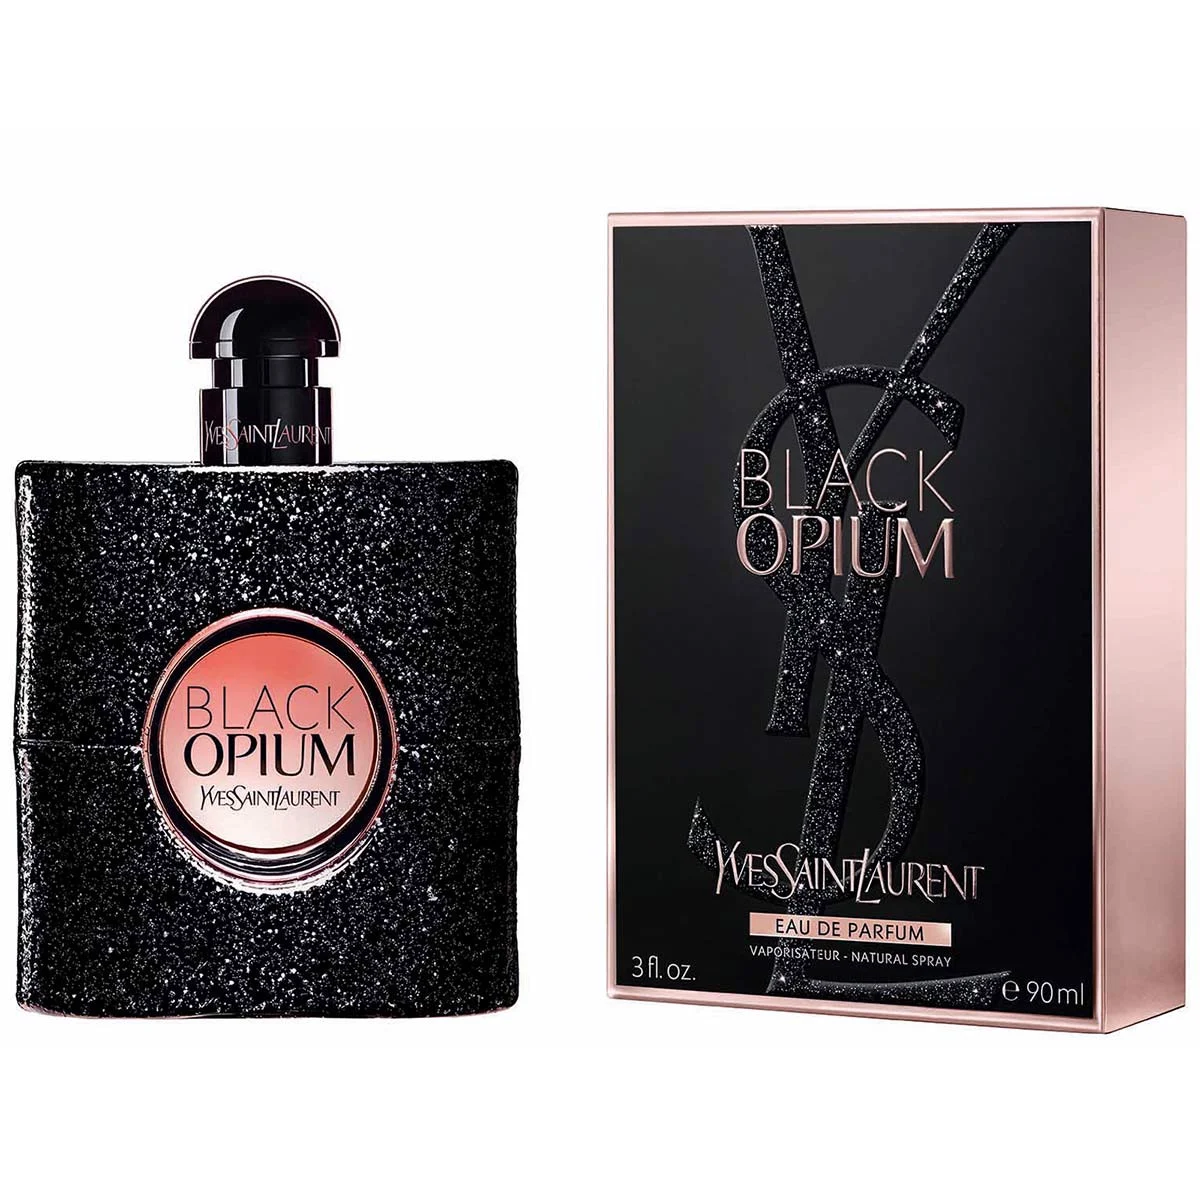 Ysl Black Opium 90ml